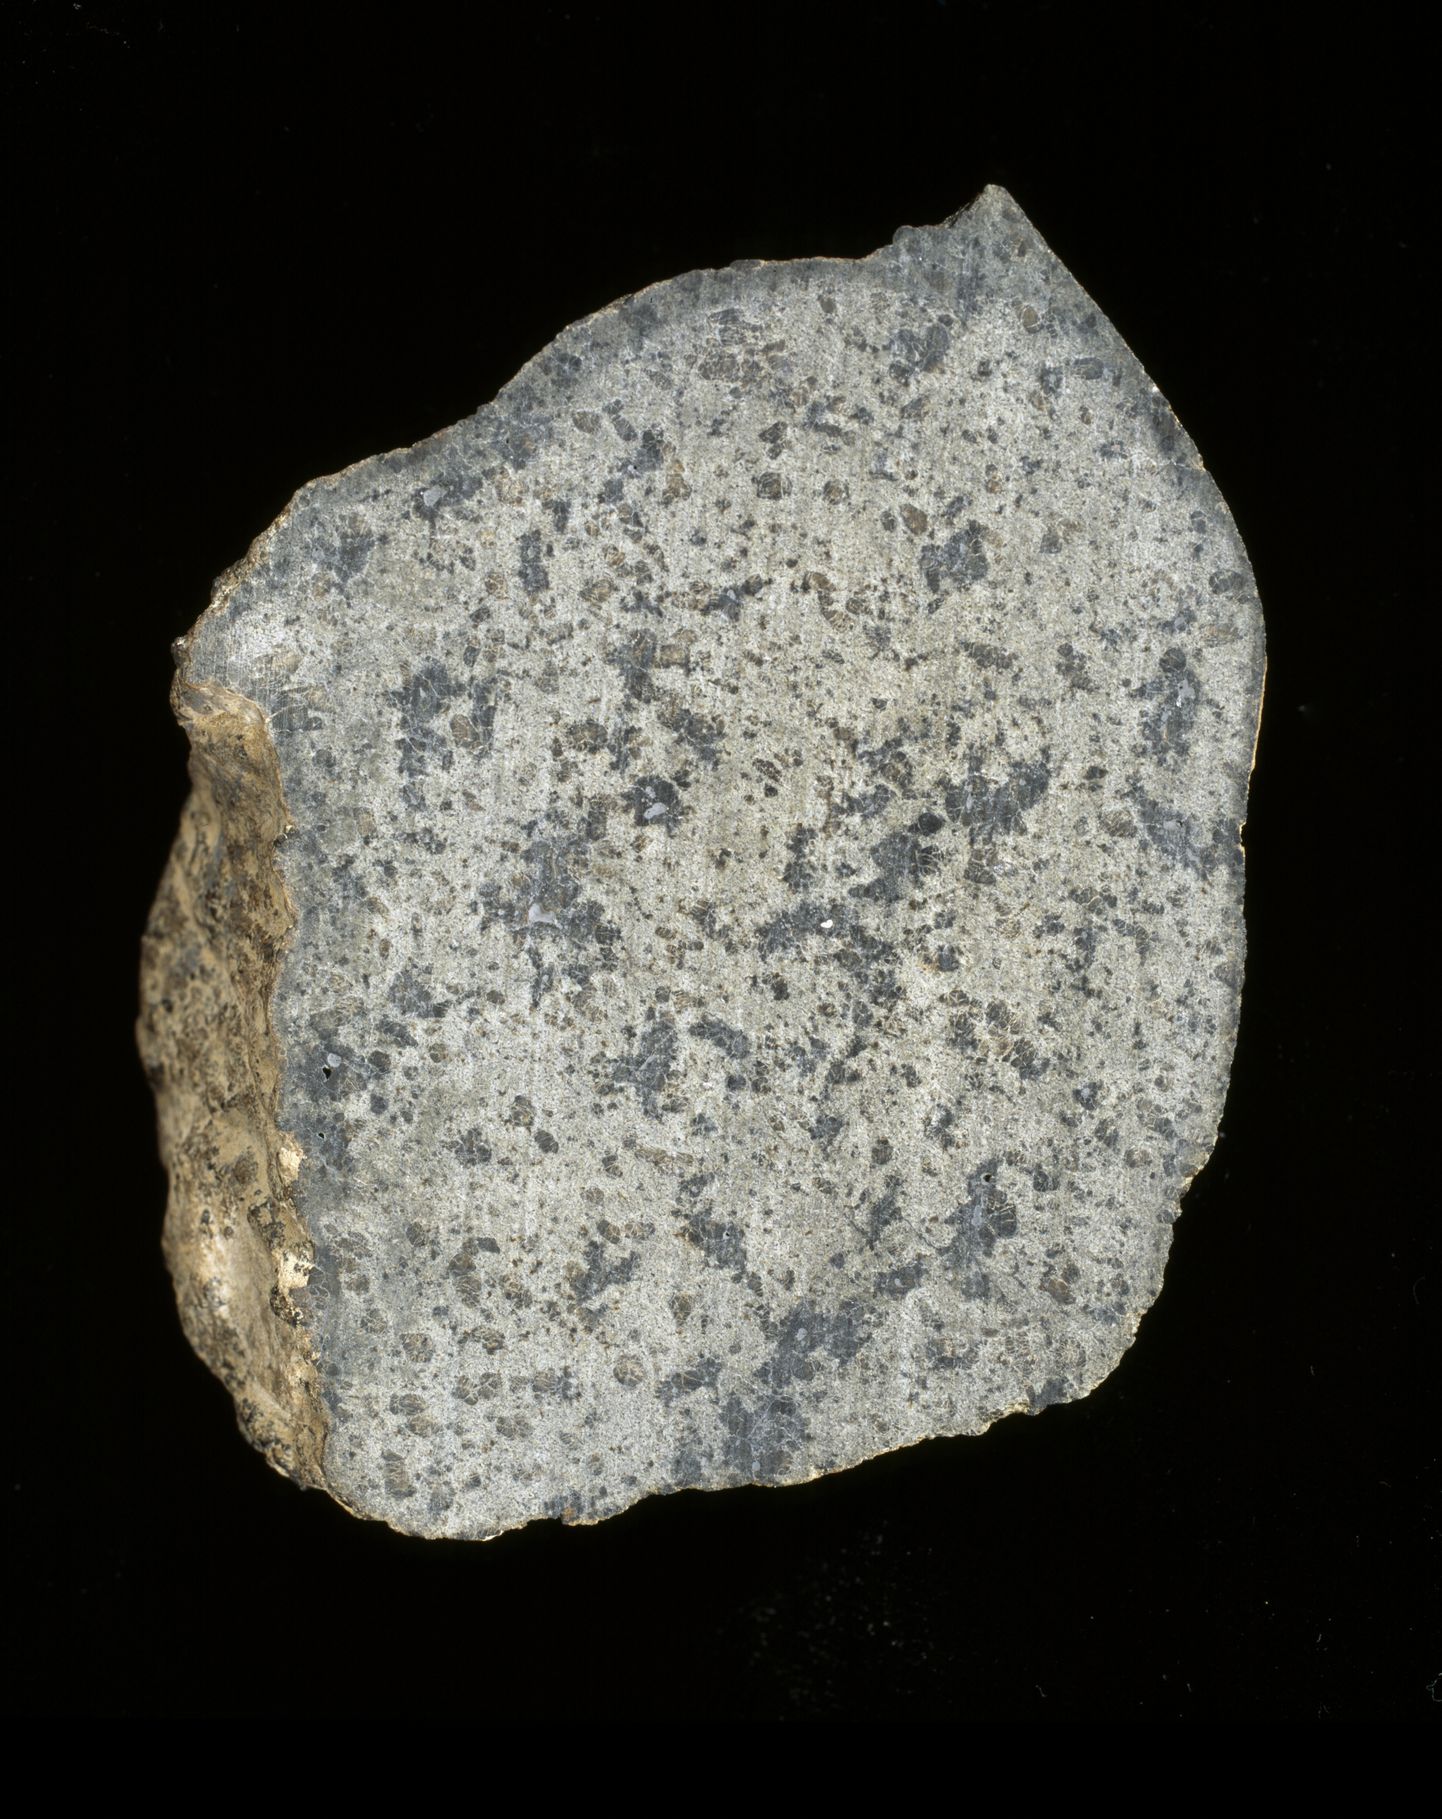 Meteoriit tähistusega Sayh al Uhaymir 008, mis leiti 1999 Omaanist